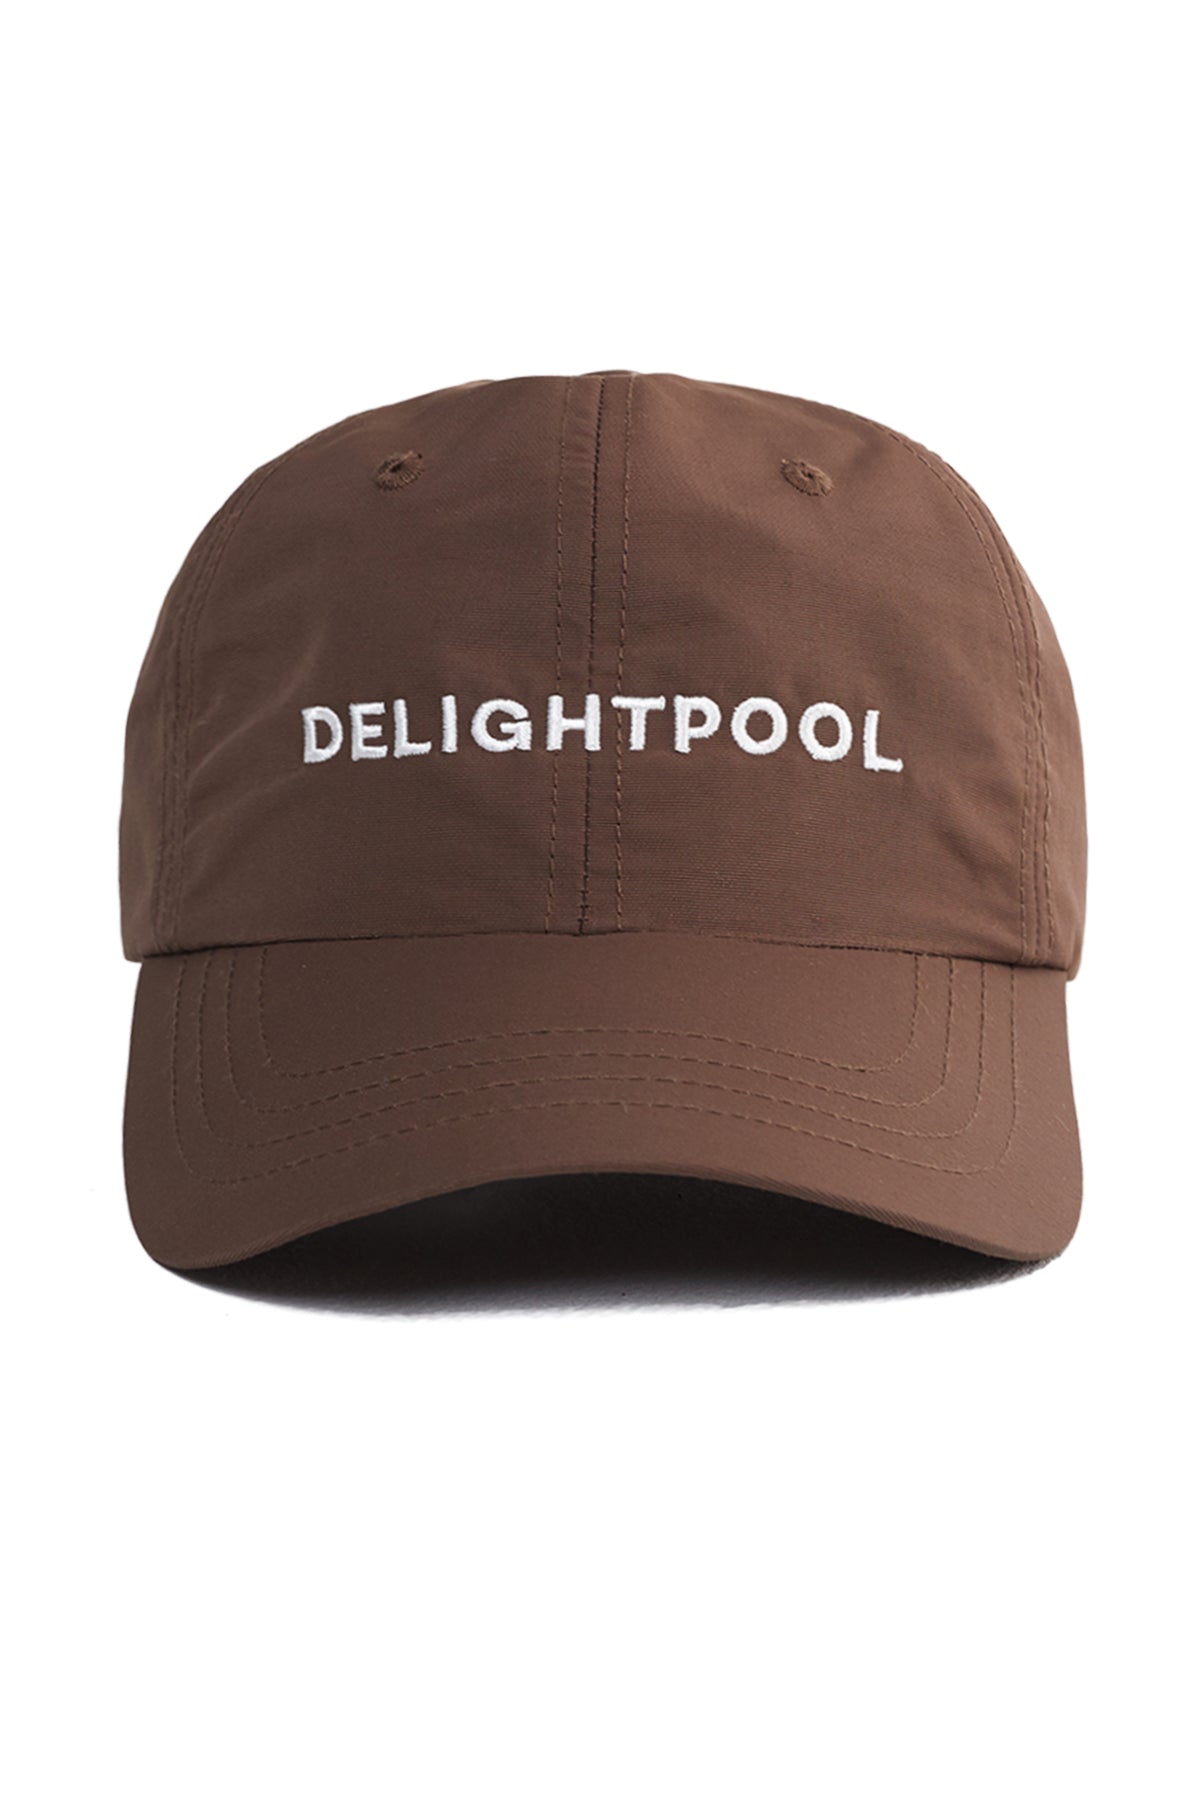 Delightpool Cap - Brown